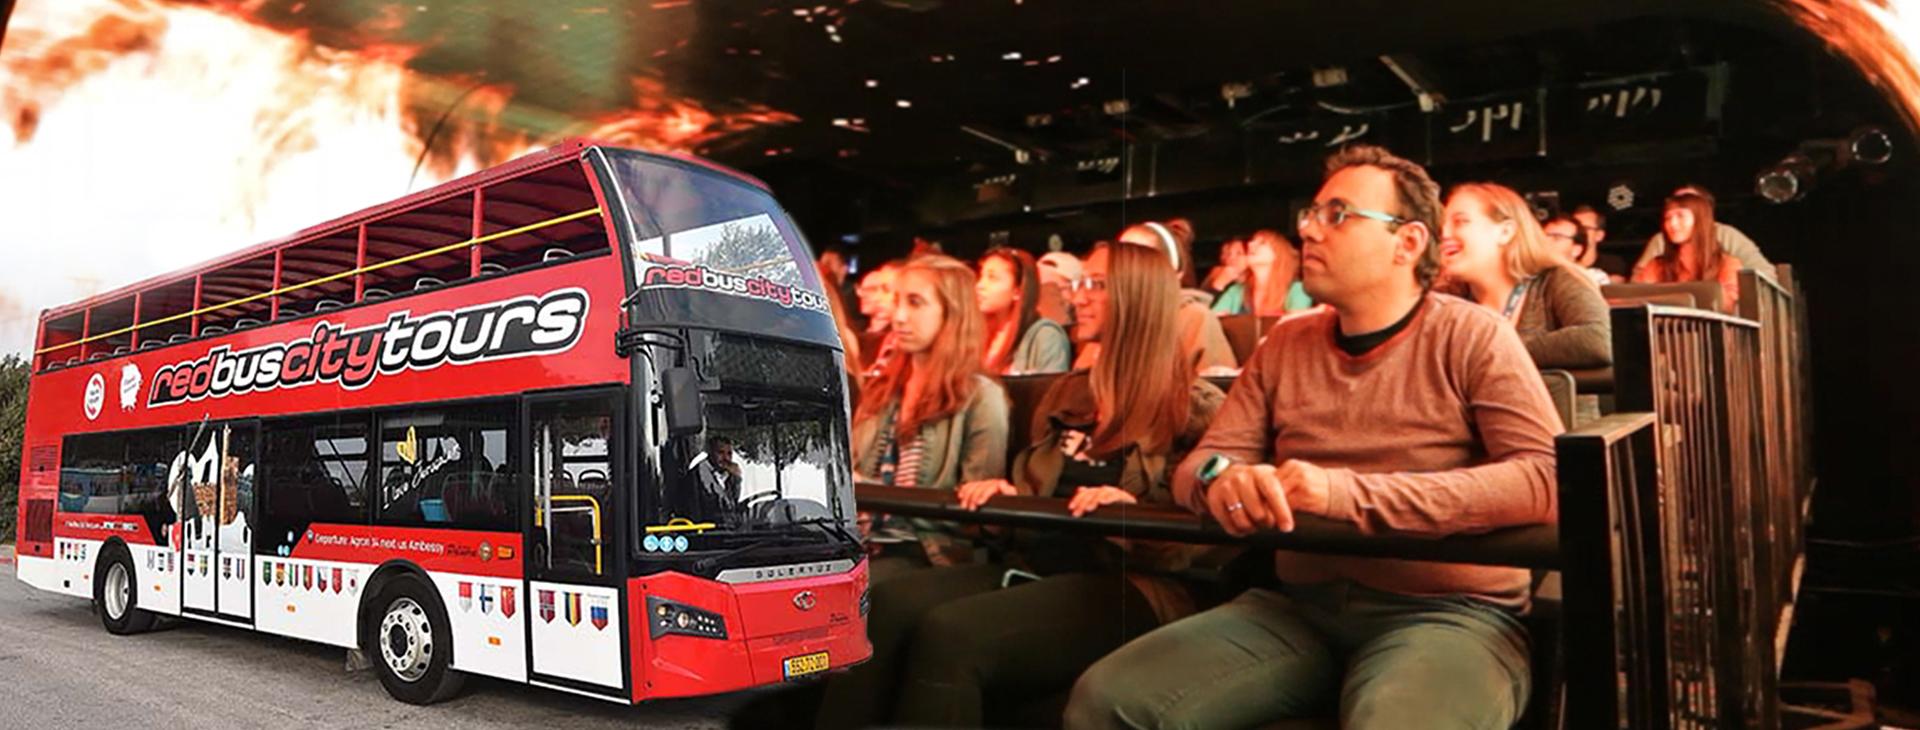 צילום של מעלית הזמן בשילוב סיור עם האוטובוס הדו-קומתי האדום